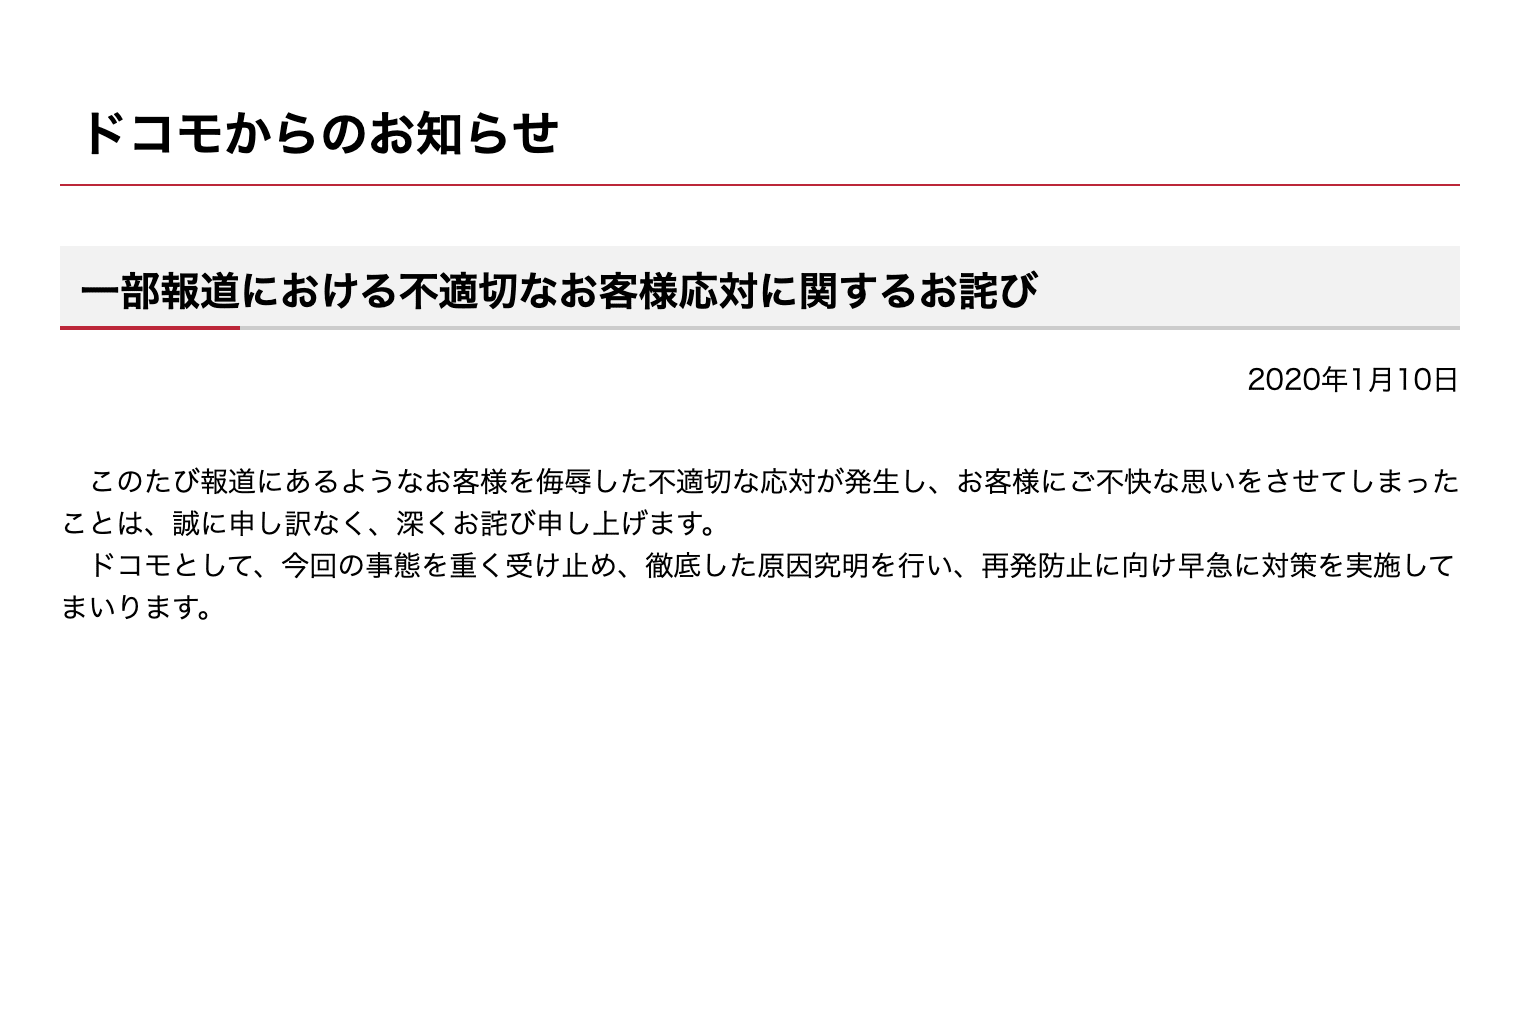 ドコモ ユーザーに対する不適切応対を謝罪 Engadget 日本版